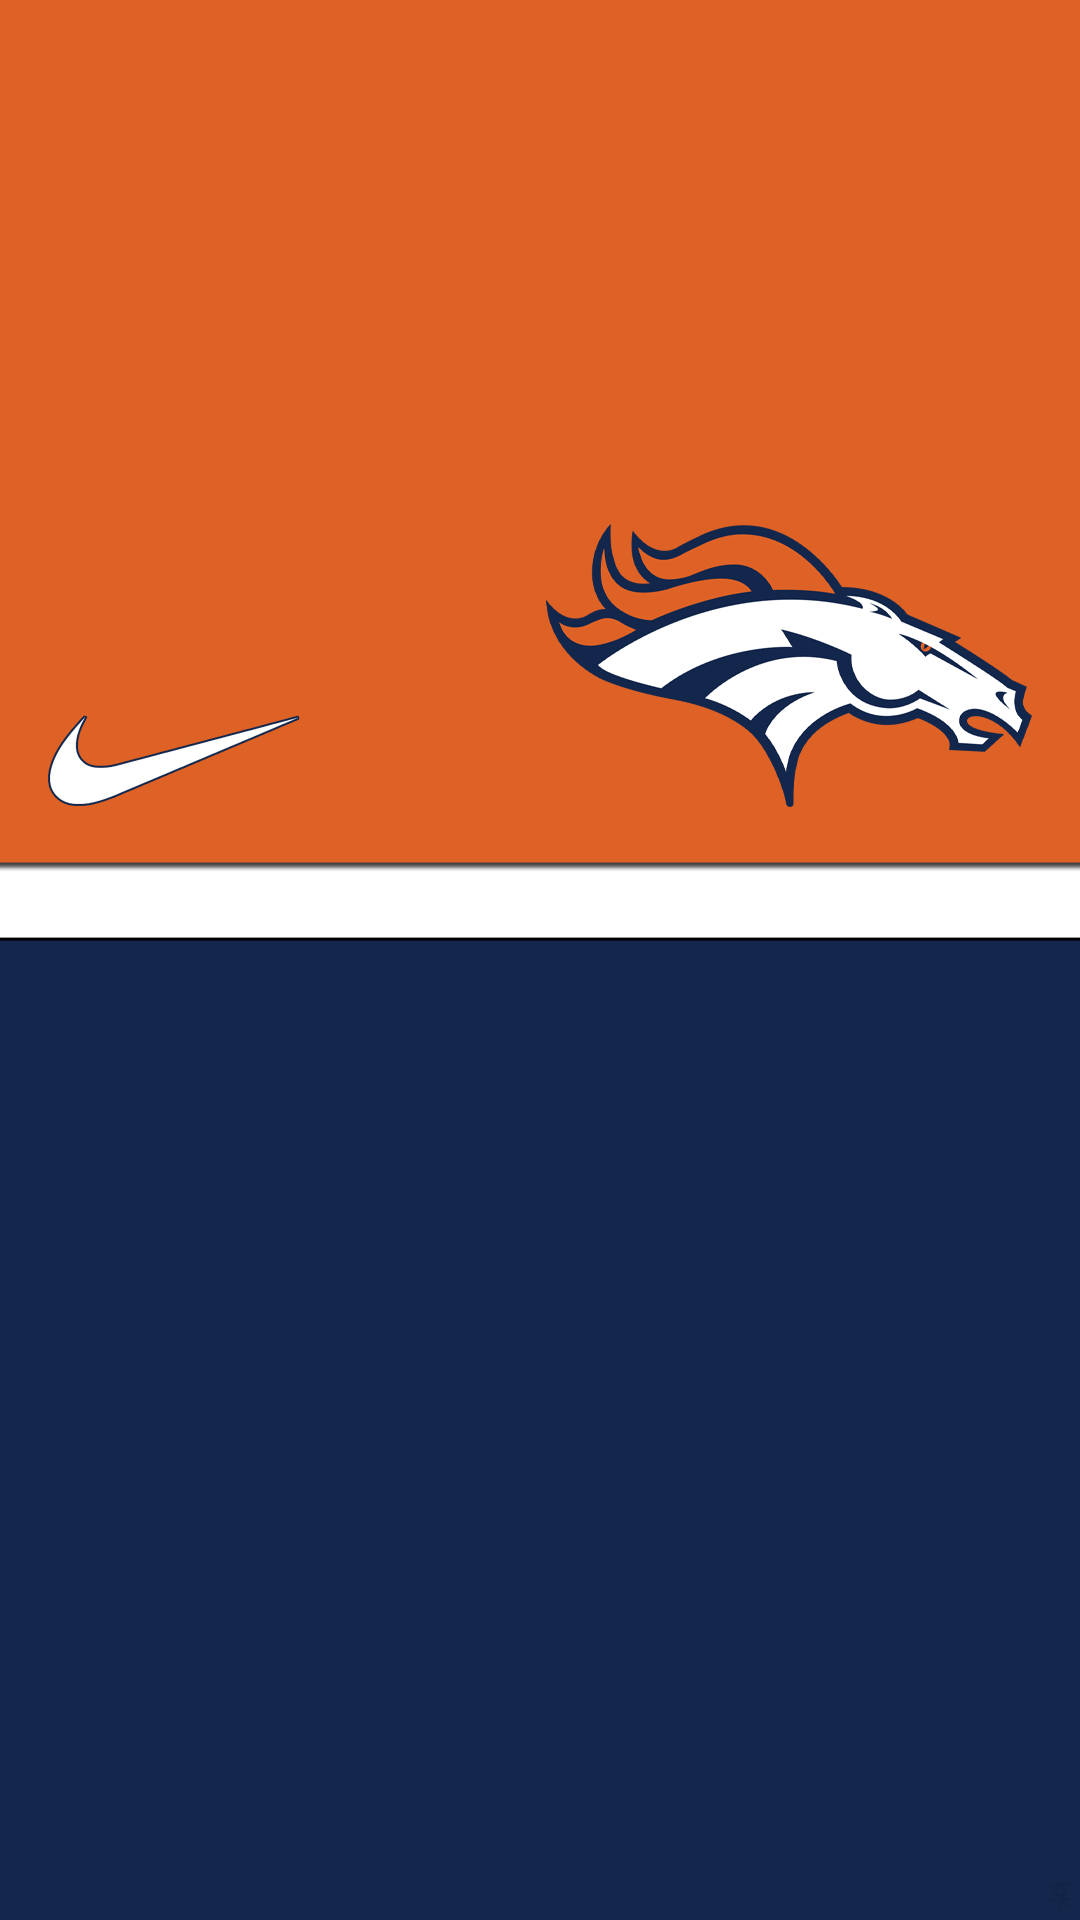 Denver Broncos 1080 X 1920 Wallpaper